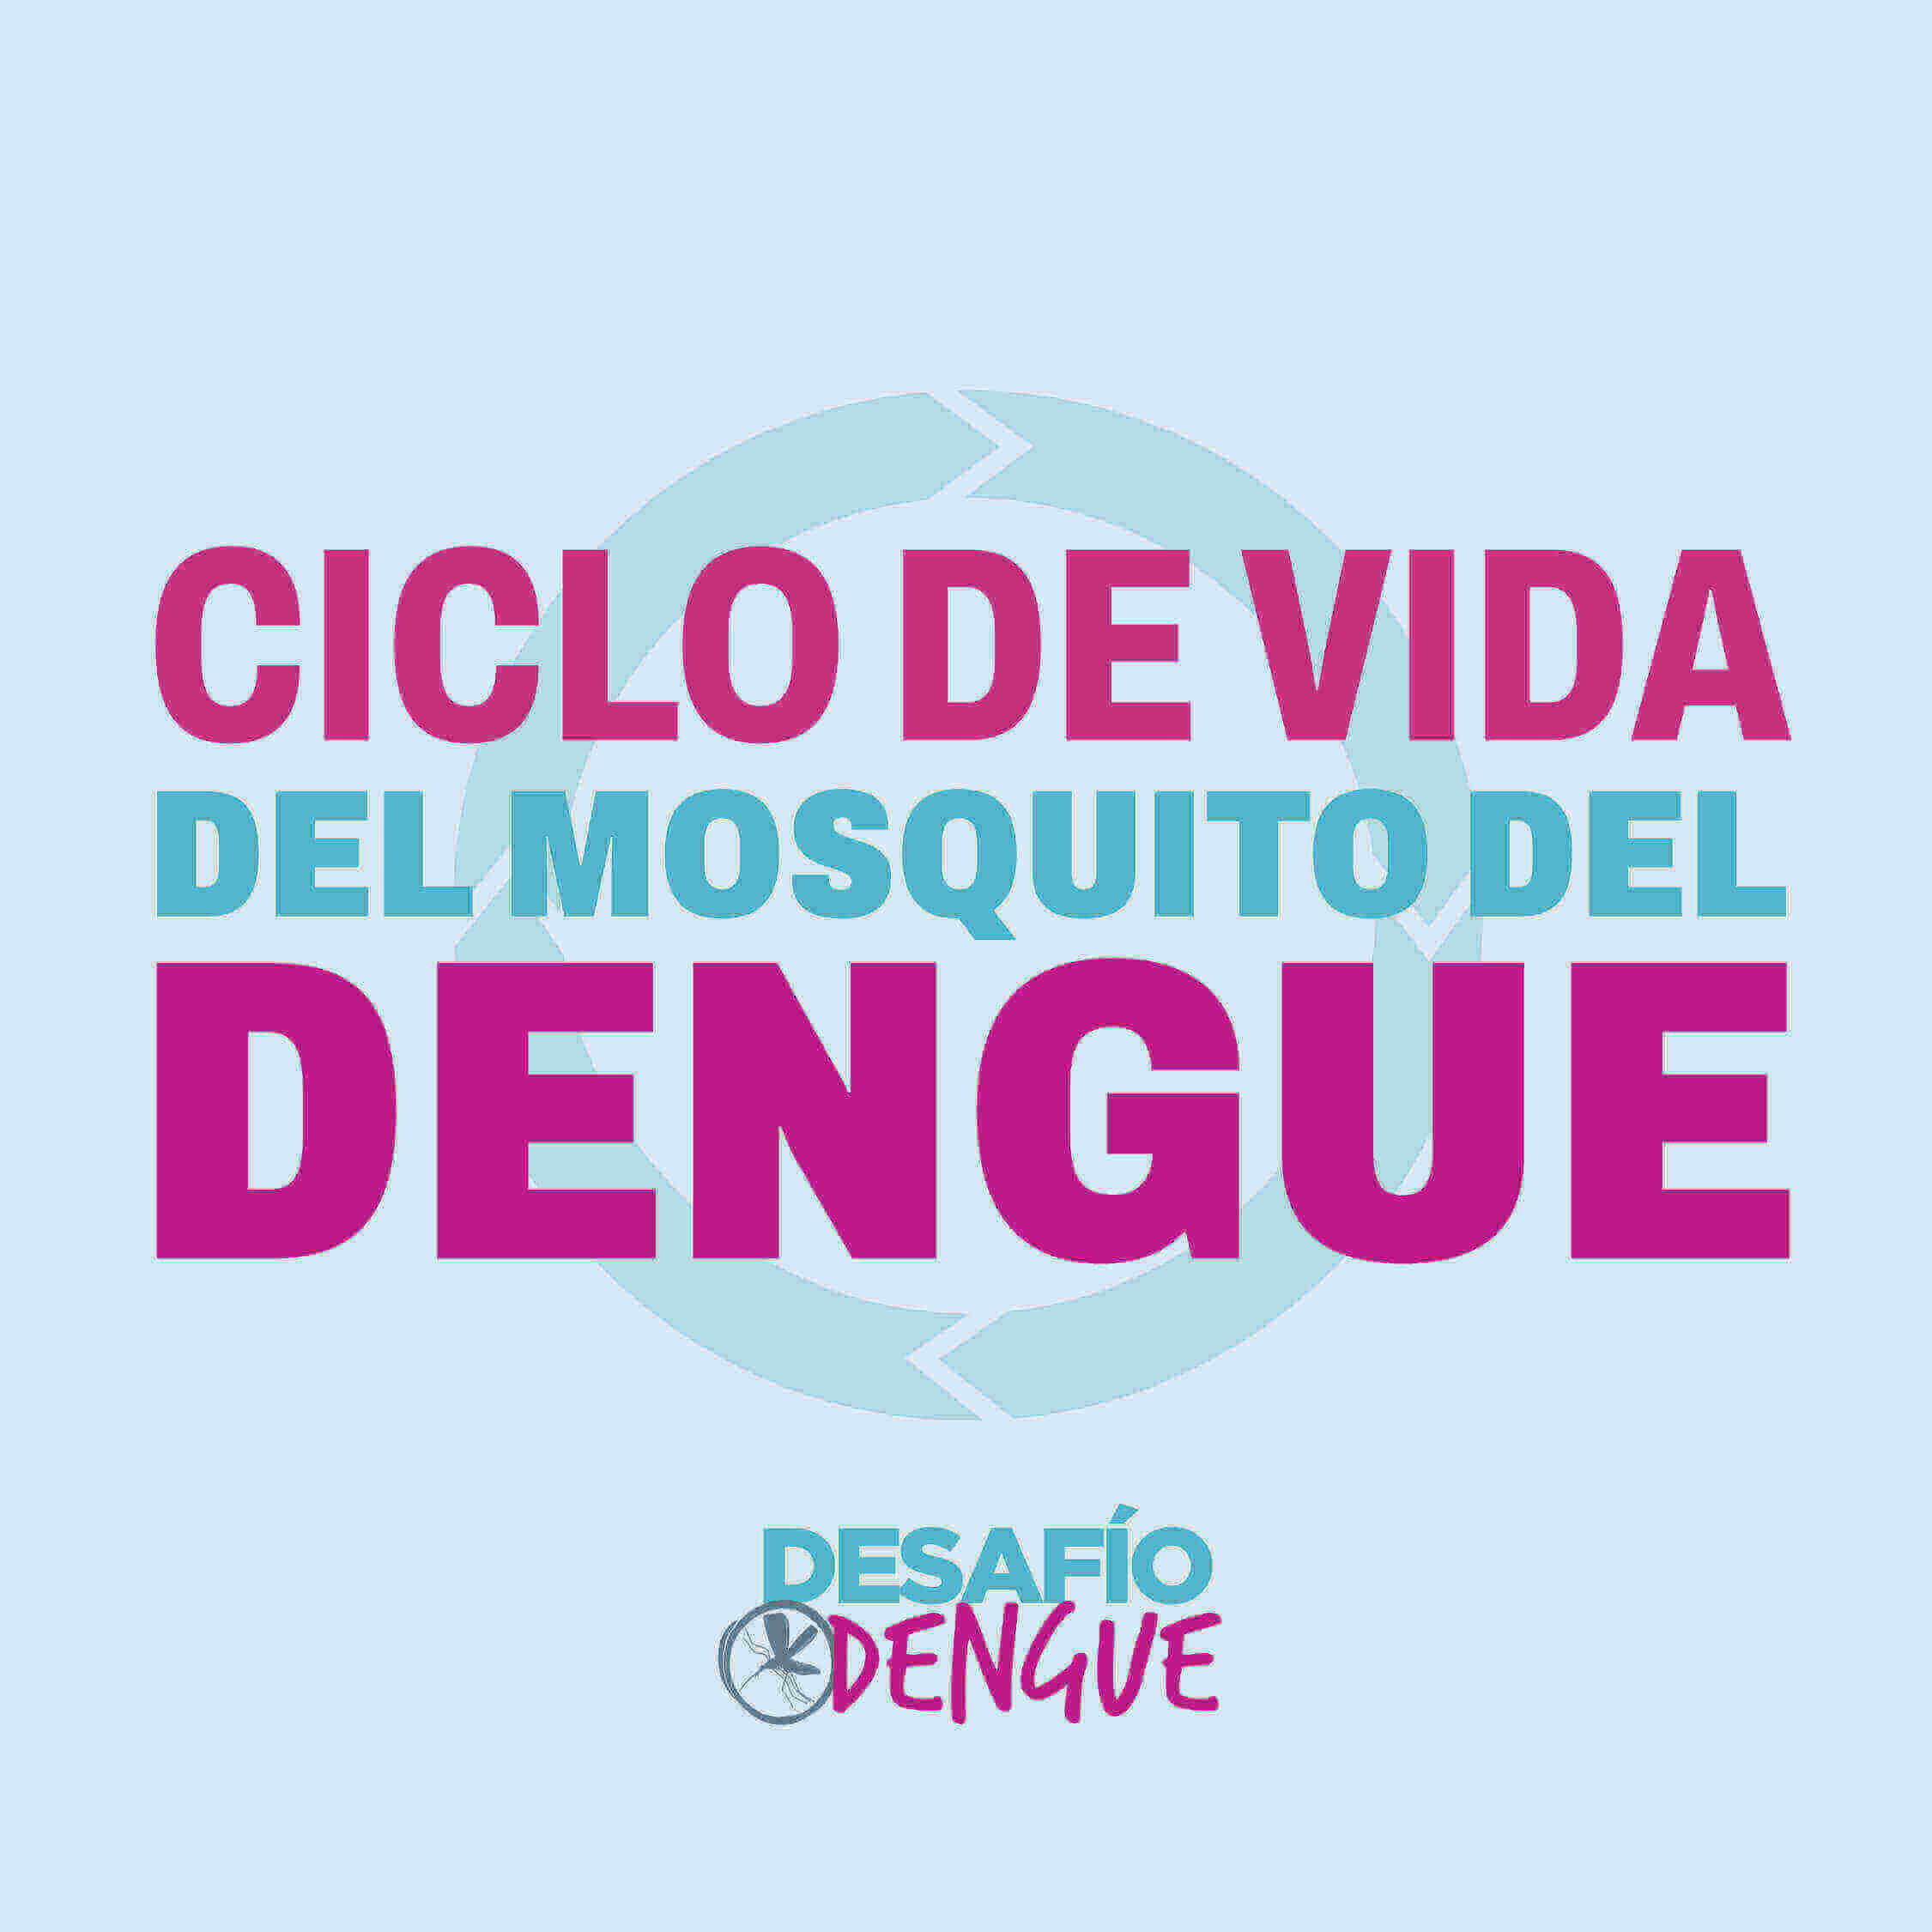 Ciclo de vida del mosquito del dengue